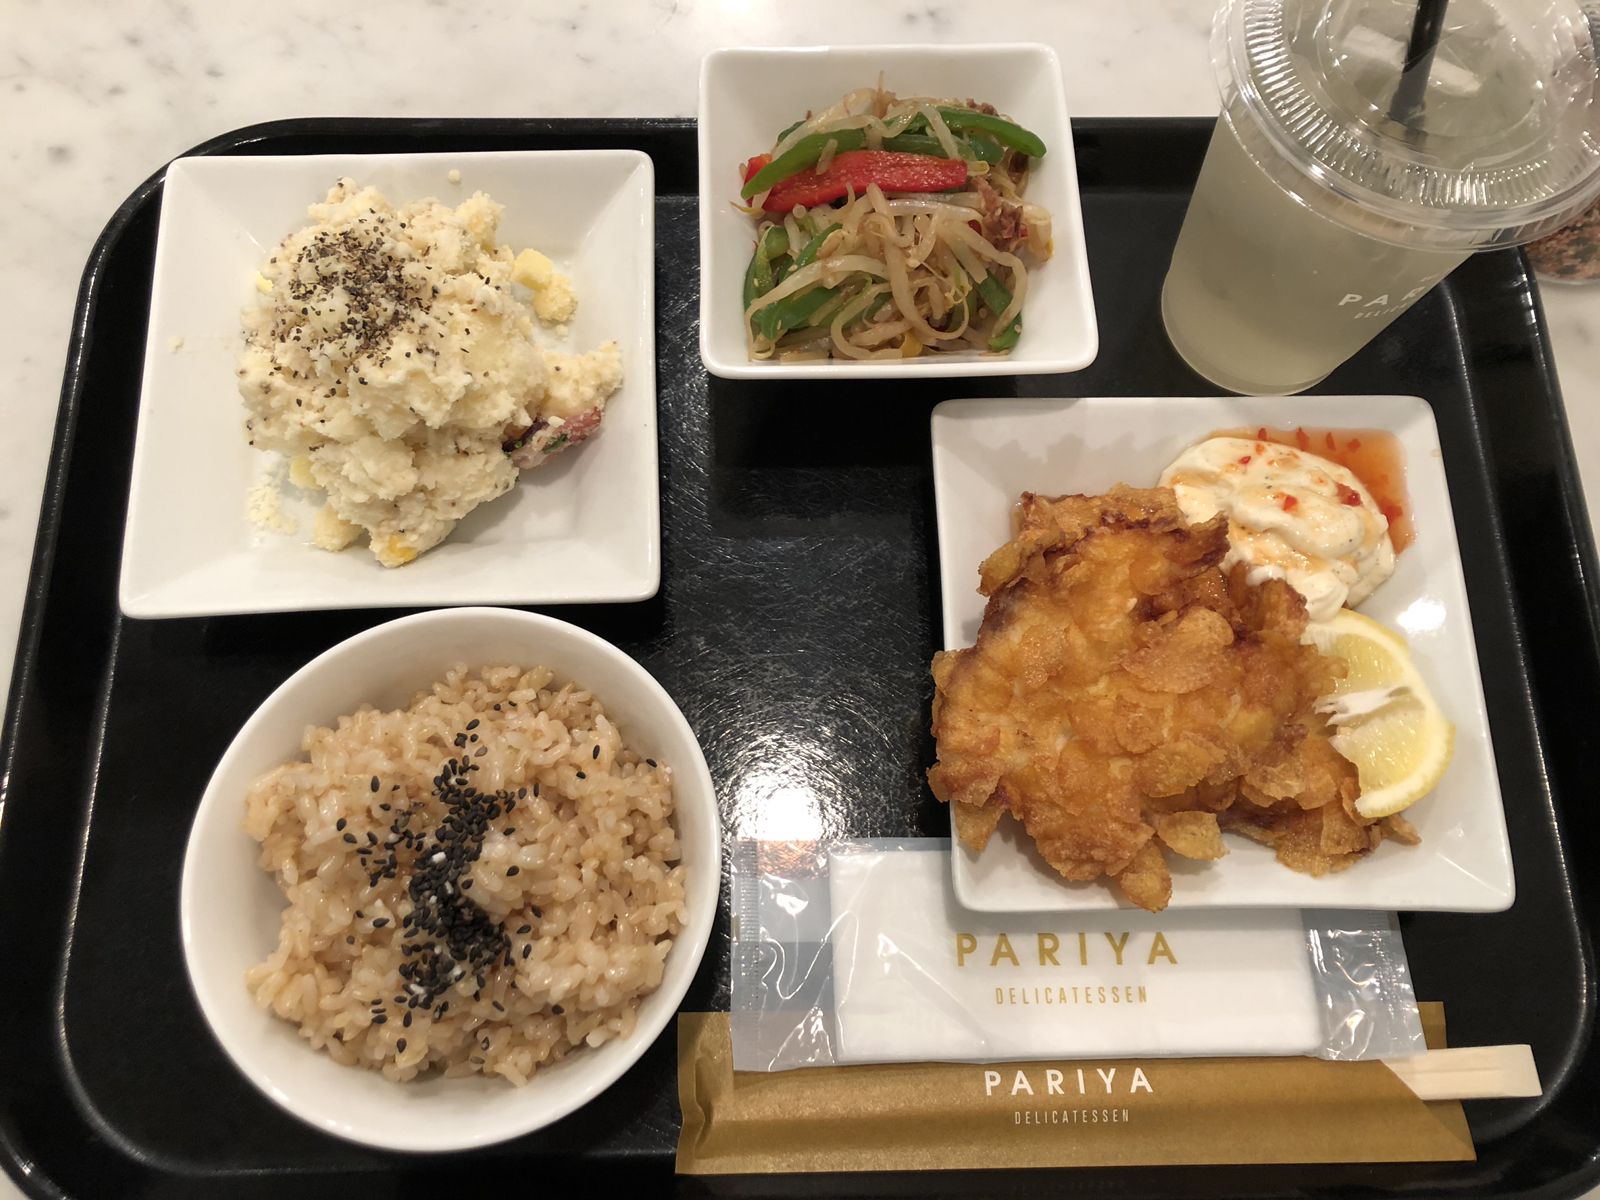 今日のランチは おしゃれ定食 で決まり 東京都内の和食カフェ4店 Retrip リトリップ